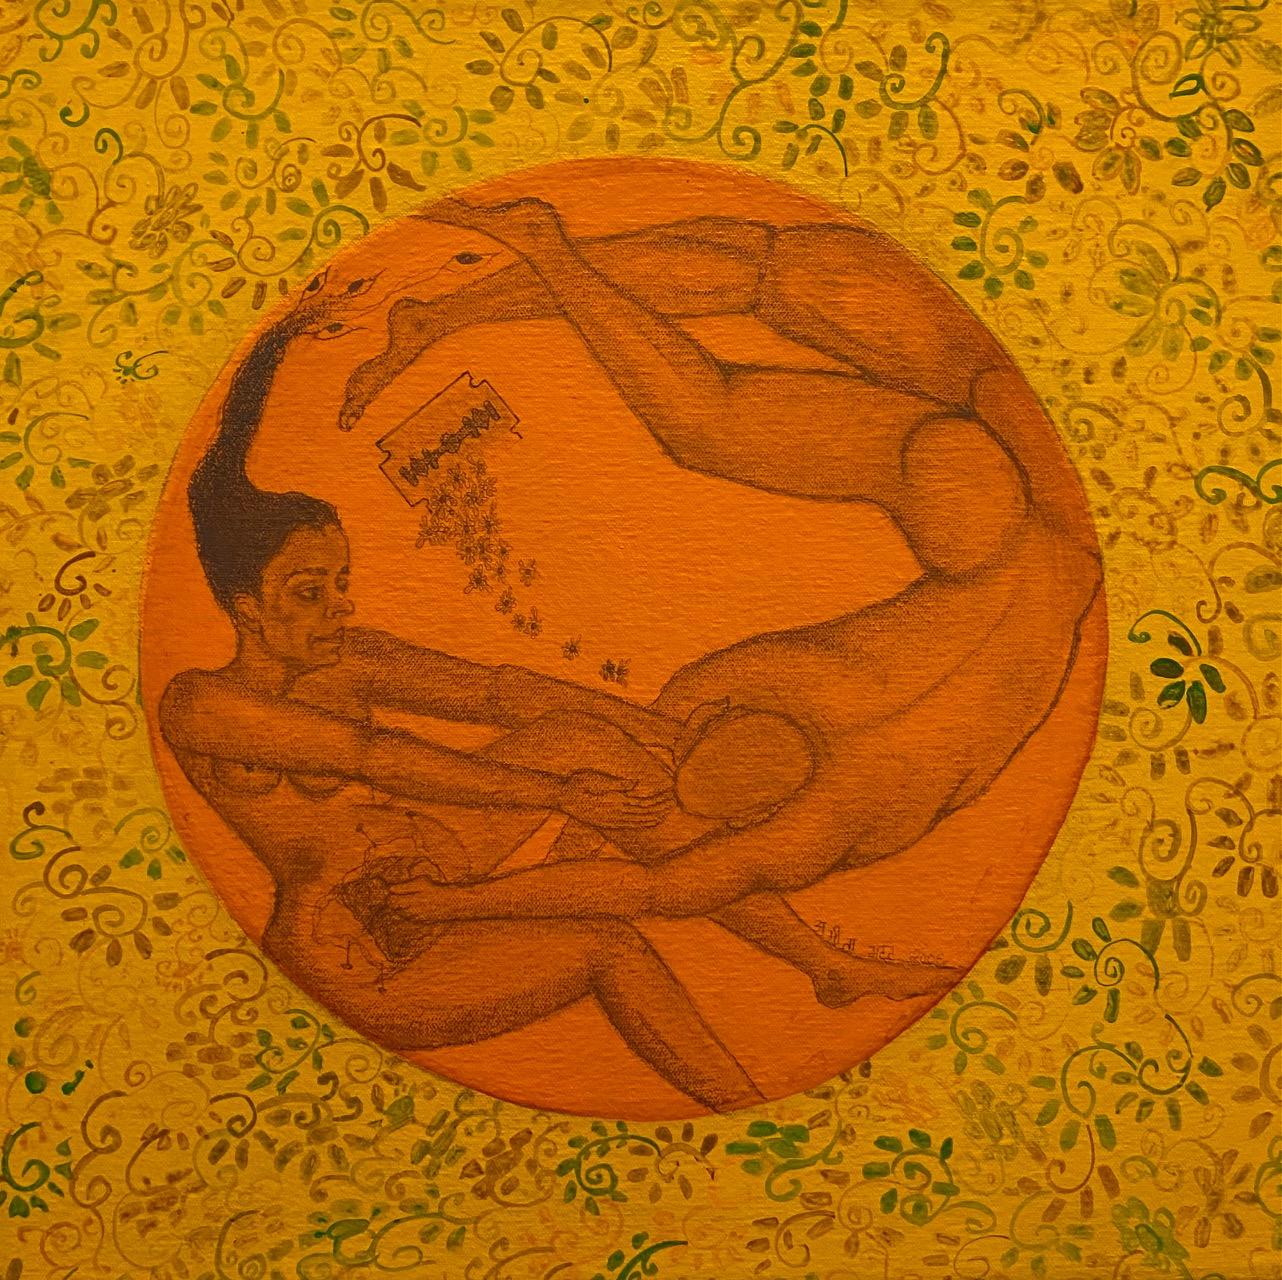 Tat Tvam Asi - Vous êtes moi, graphite et acrylique sur toile, symbolisme, art indien